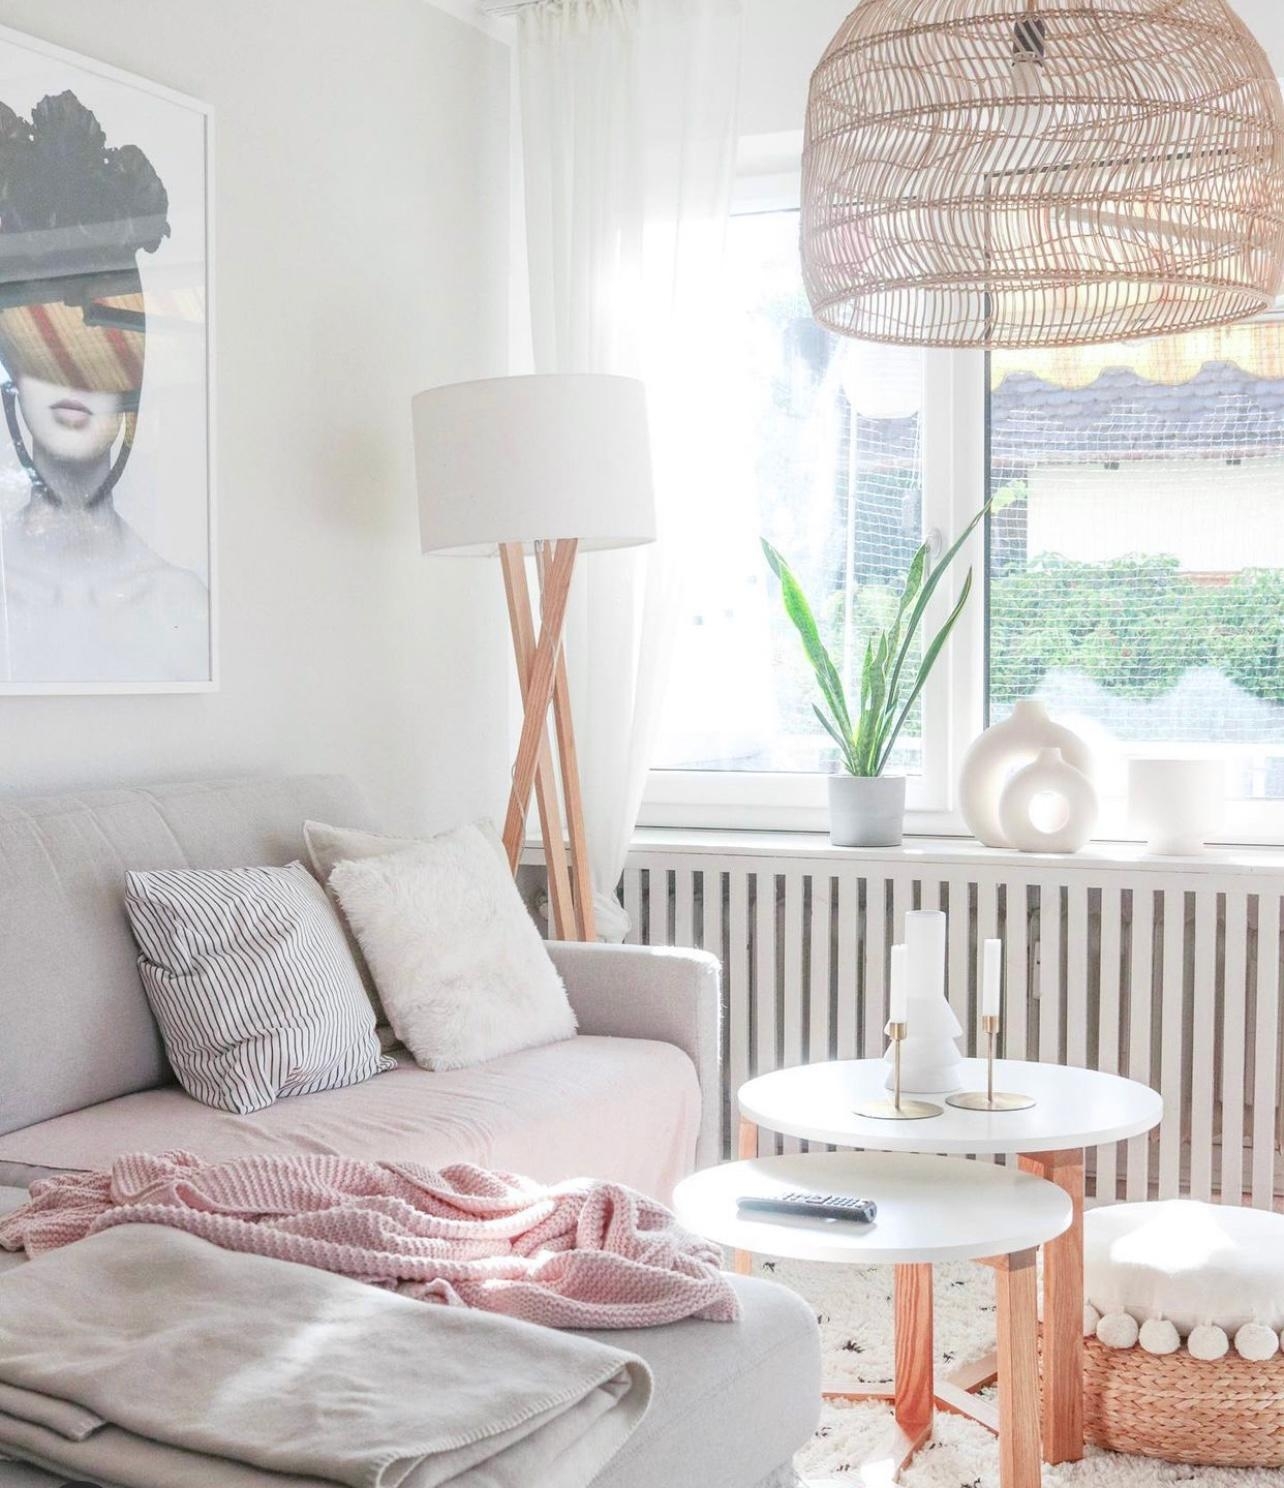 Wohnzimmer 🤍
#skandi #wohnzimmer #skandiwohnzimmer #homedetails #diy #skandinavian #livingroom 